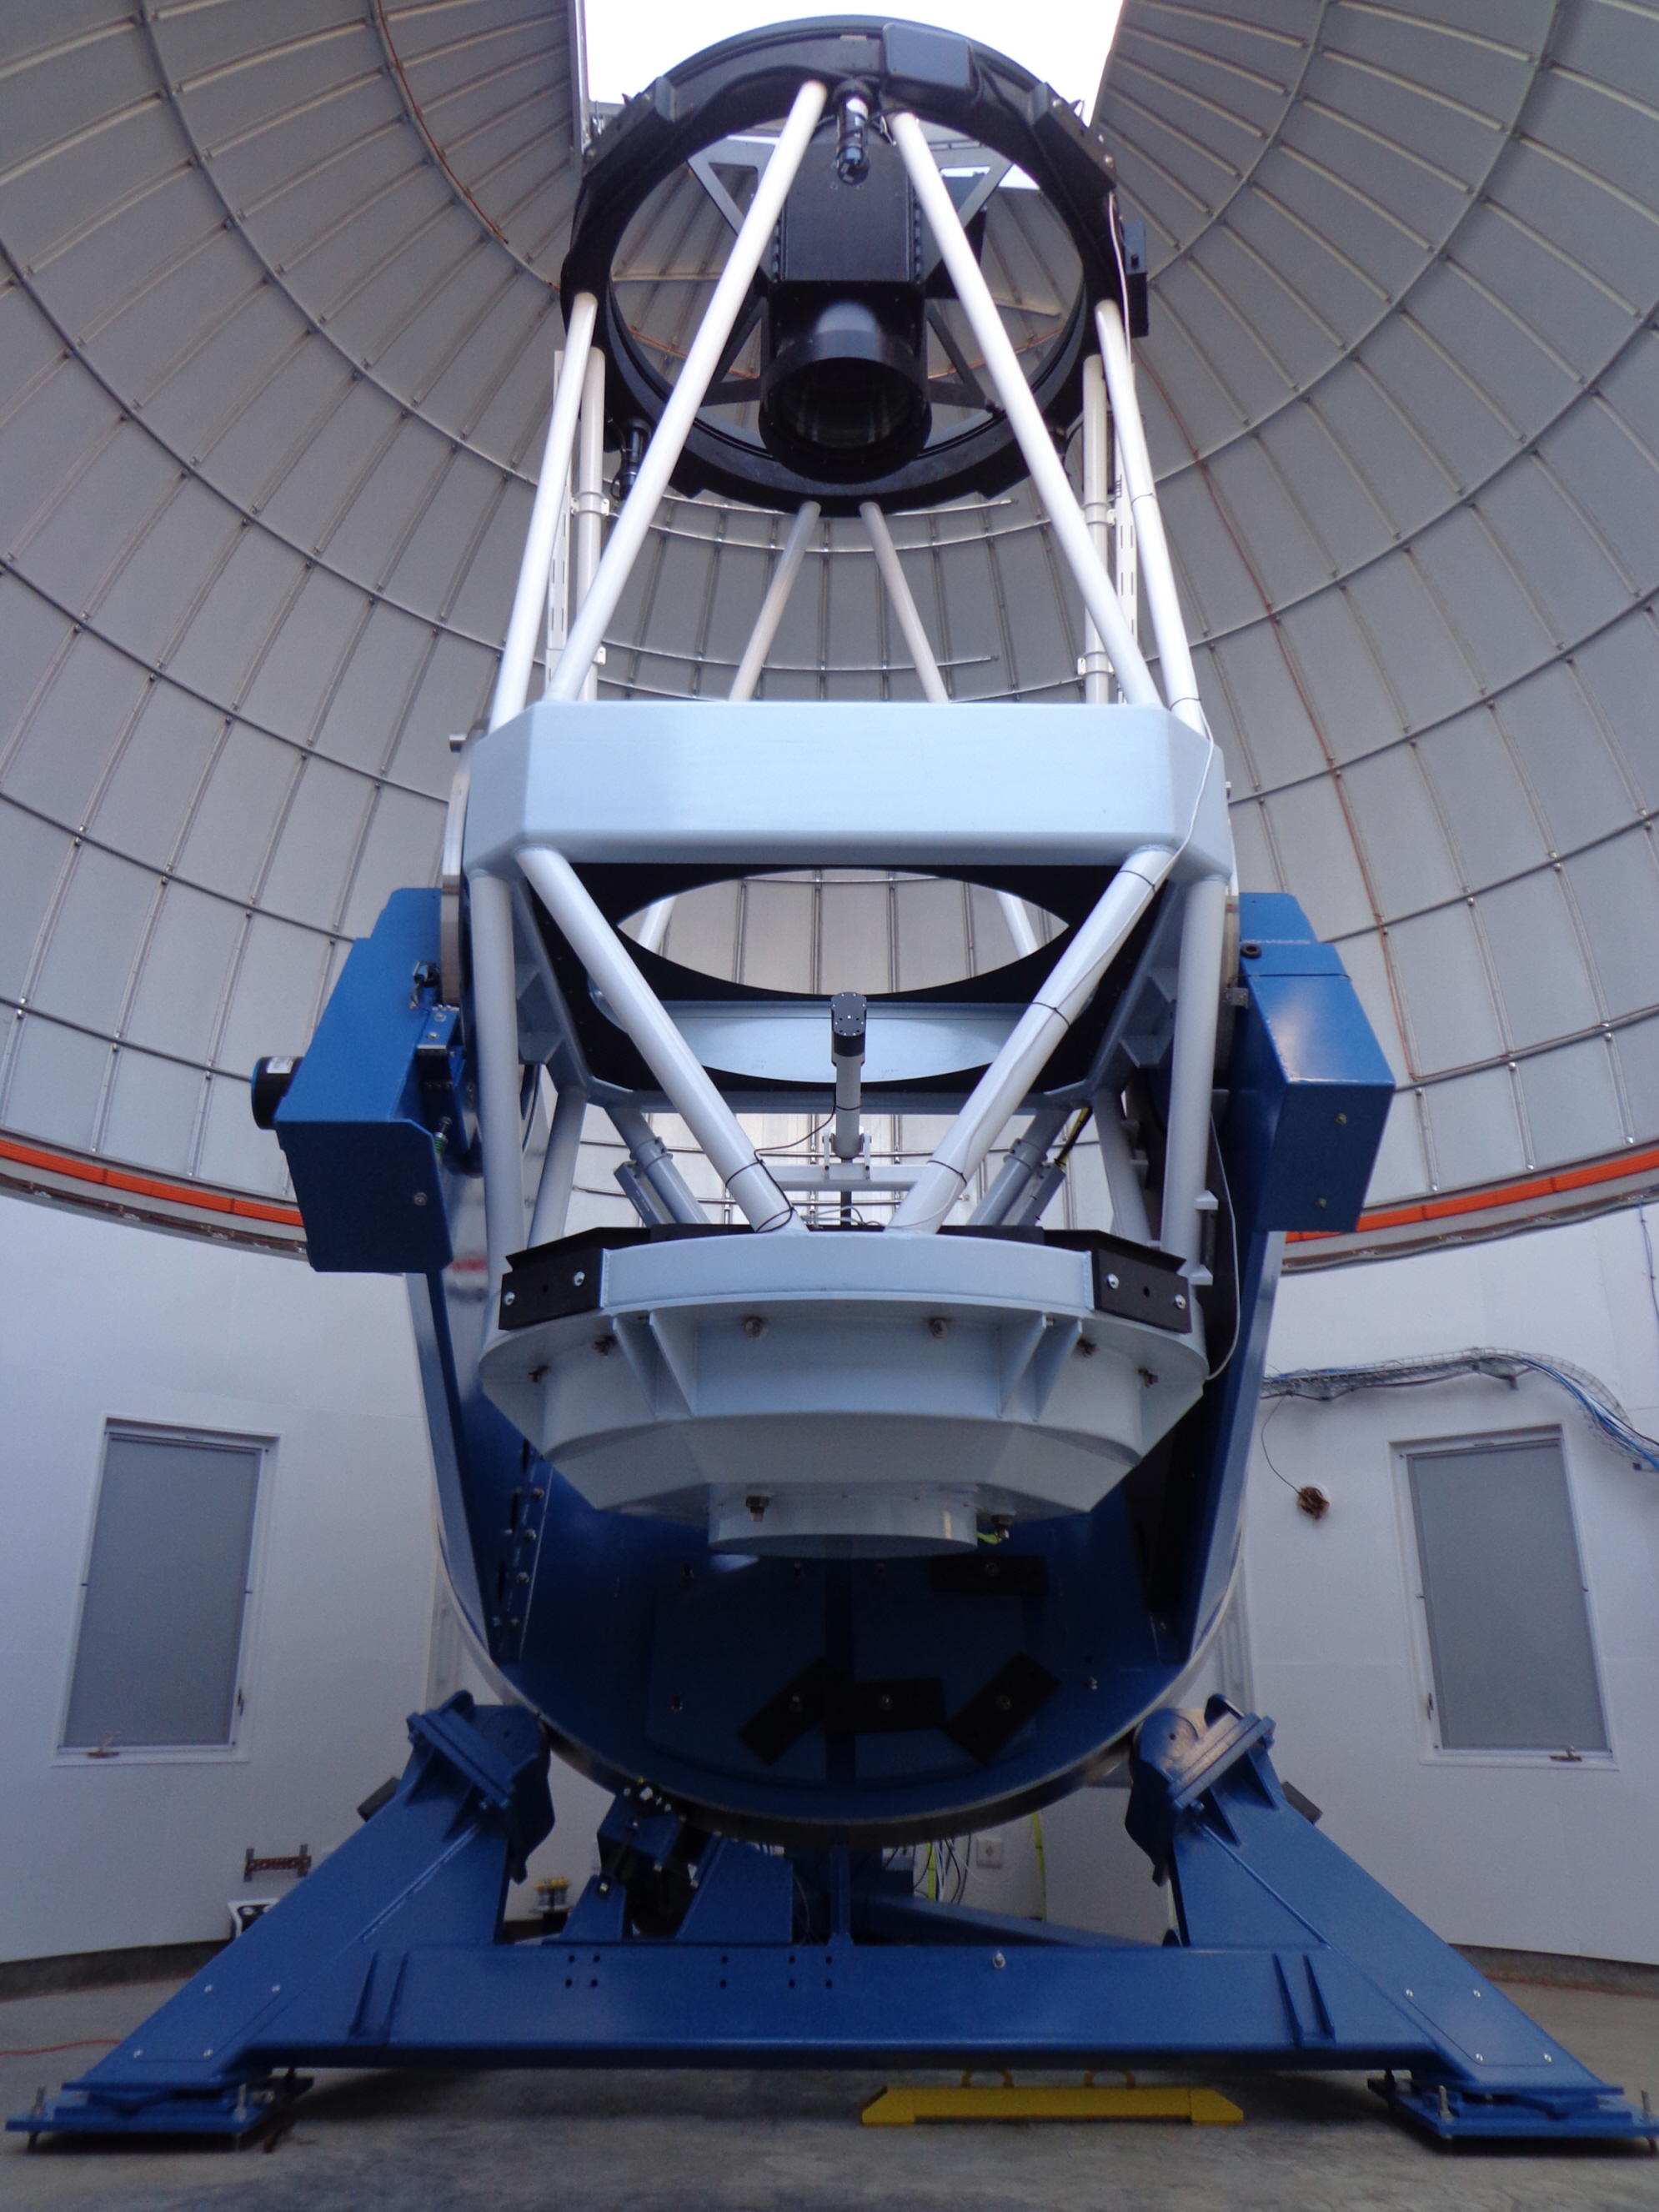 한국천문연구원은 2015년 말부터 외계행성 탐색 외에 초신성, 은하, 소행성 등 다양한 연구 목적으로 KMTNet을 운영하고 있다. KMTNet은 칠레와 남아공, 호주에 설치·운영하는 24시간 ‘별이 지지 않는’ 남반구 천문대 네트워크로 보름달 16개가 들어가는 넓은 하늘을 한 번에 촬영하는 카메라를 탑재하고 있다. 외계행성 탐색은 물론 소행성 탐사 관측에 최적화돼 있다. KMTNet 실제 모습. <사진=한국천문연구원 제공>